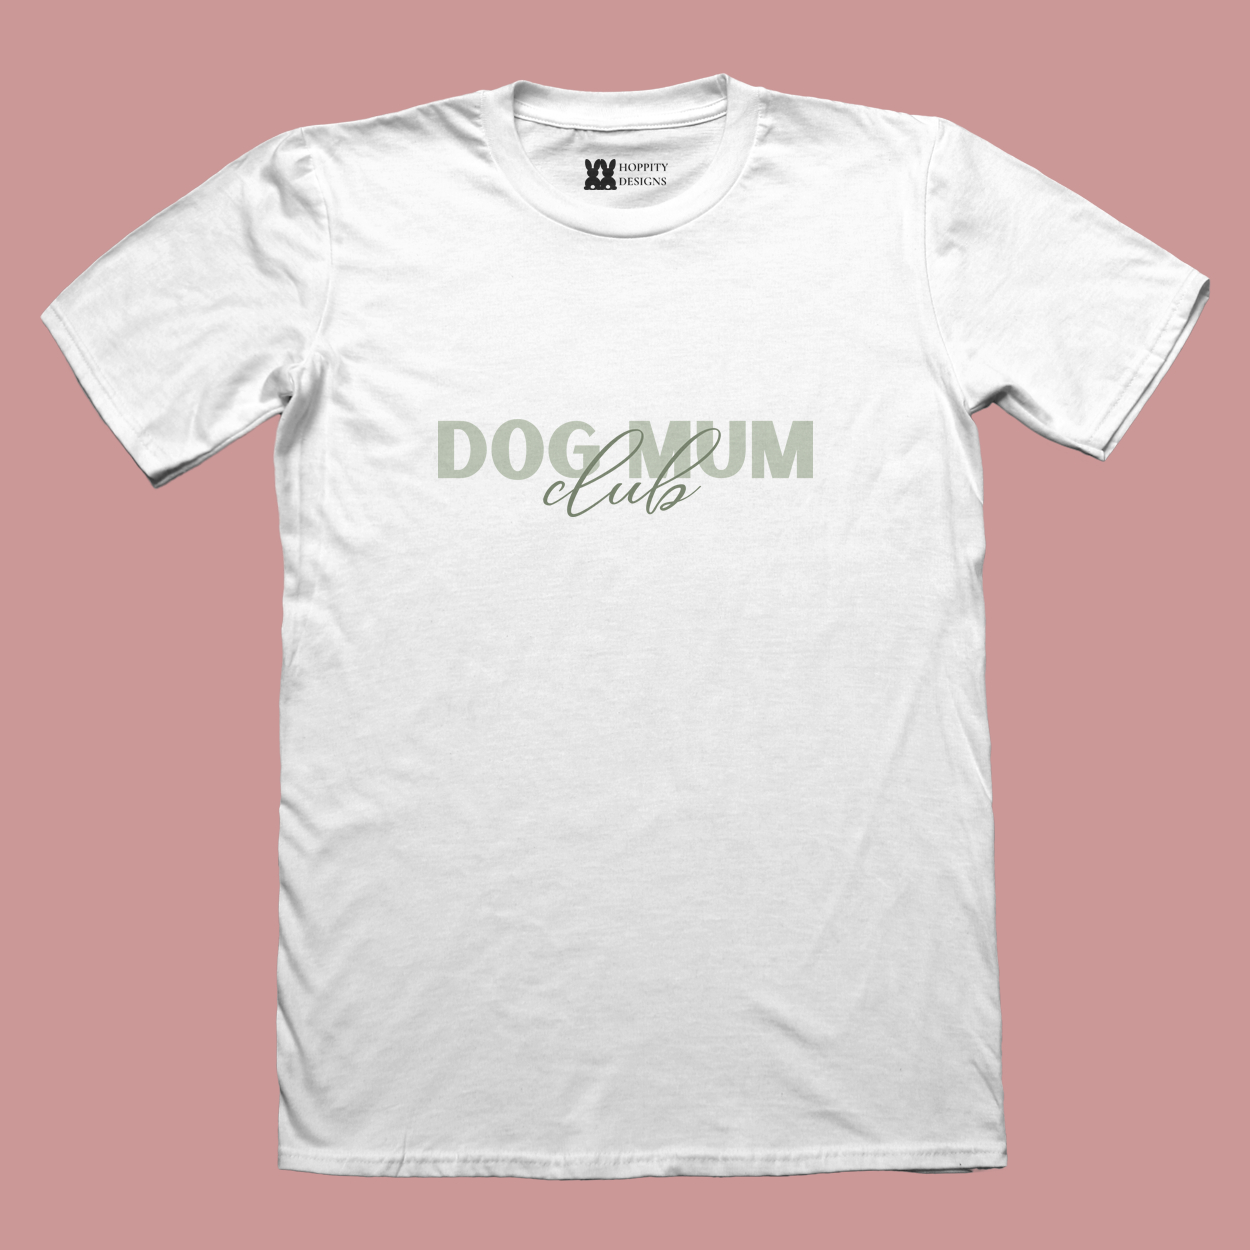 White T-Shirt with printed graphic saying "dog mum club"